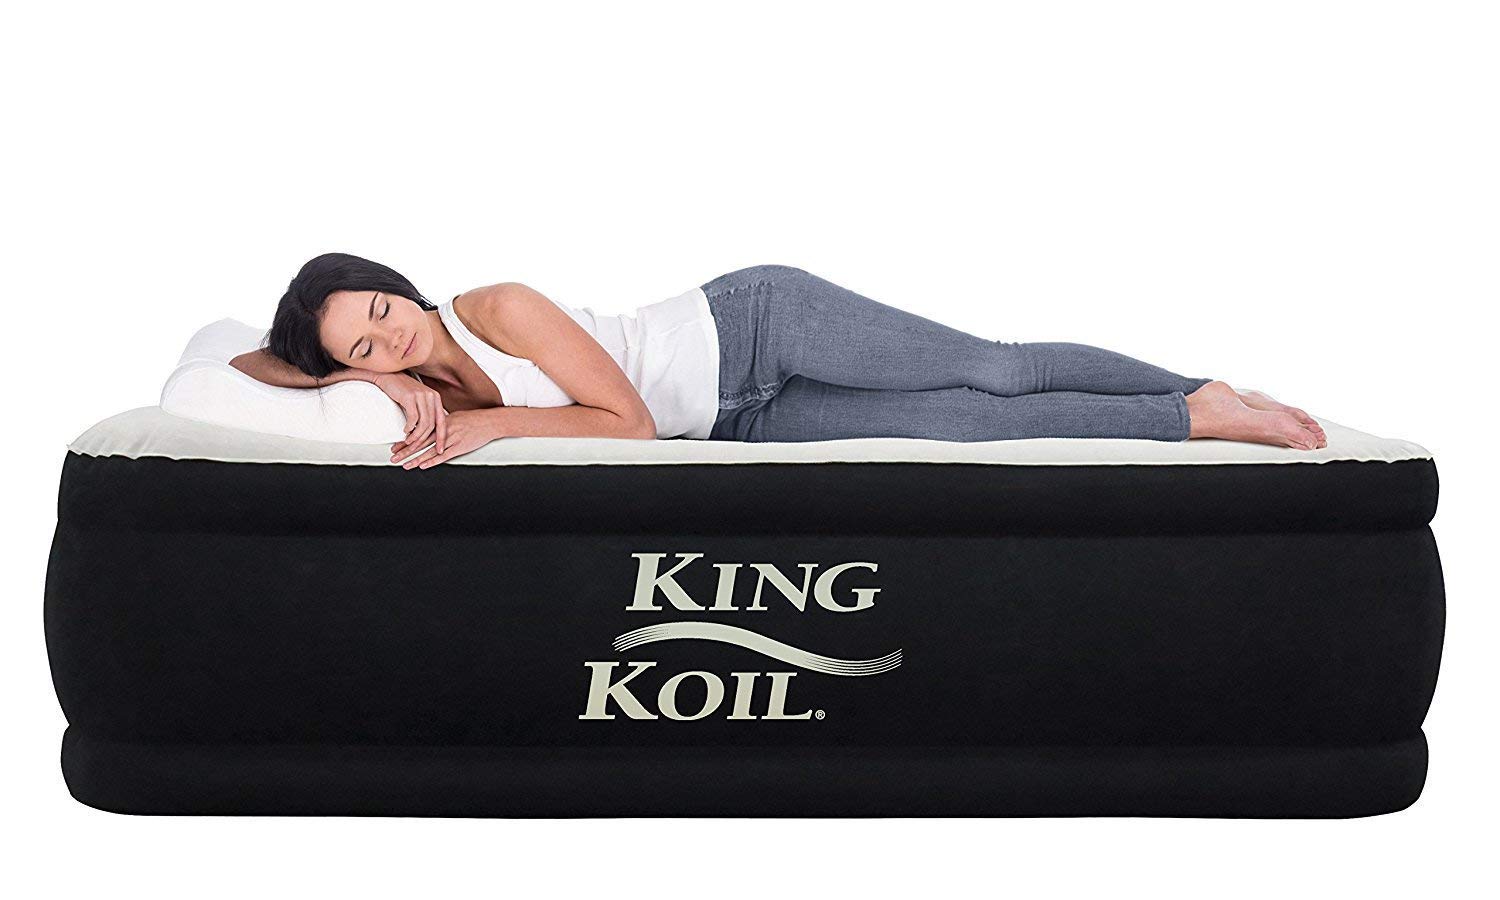 king koil air mattresses queen